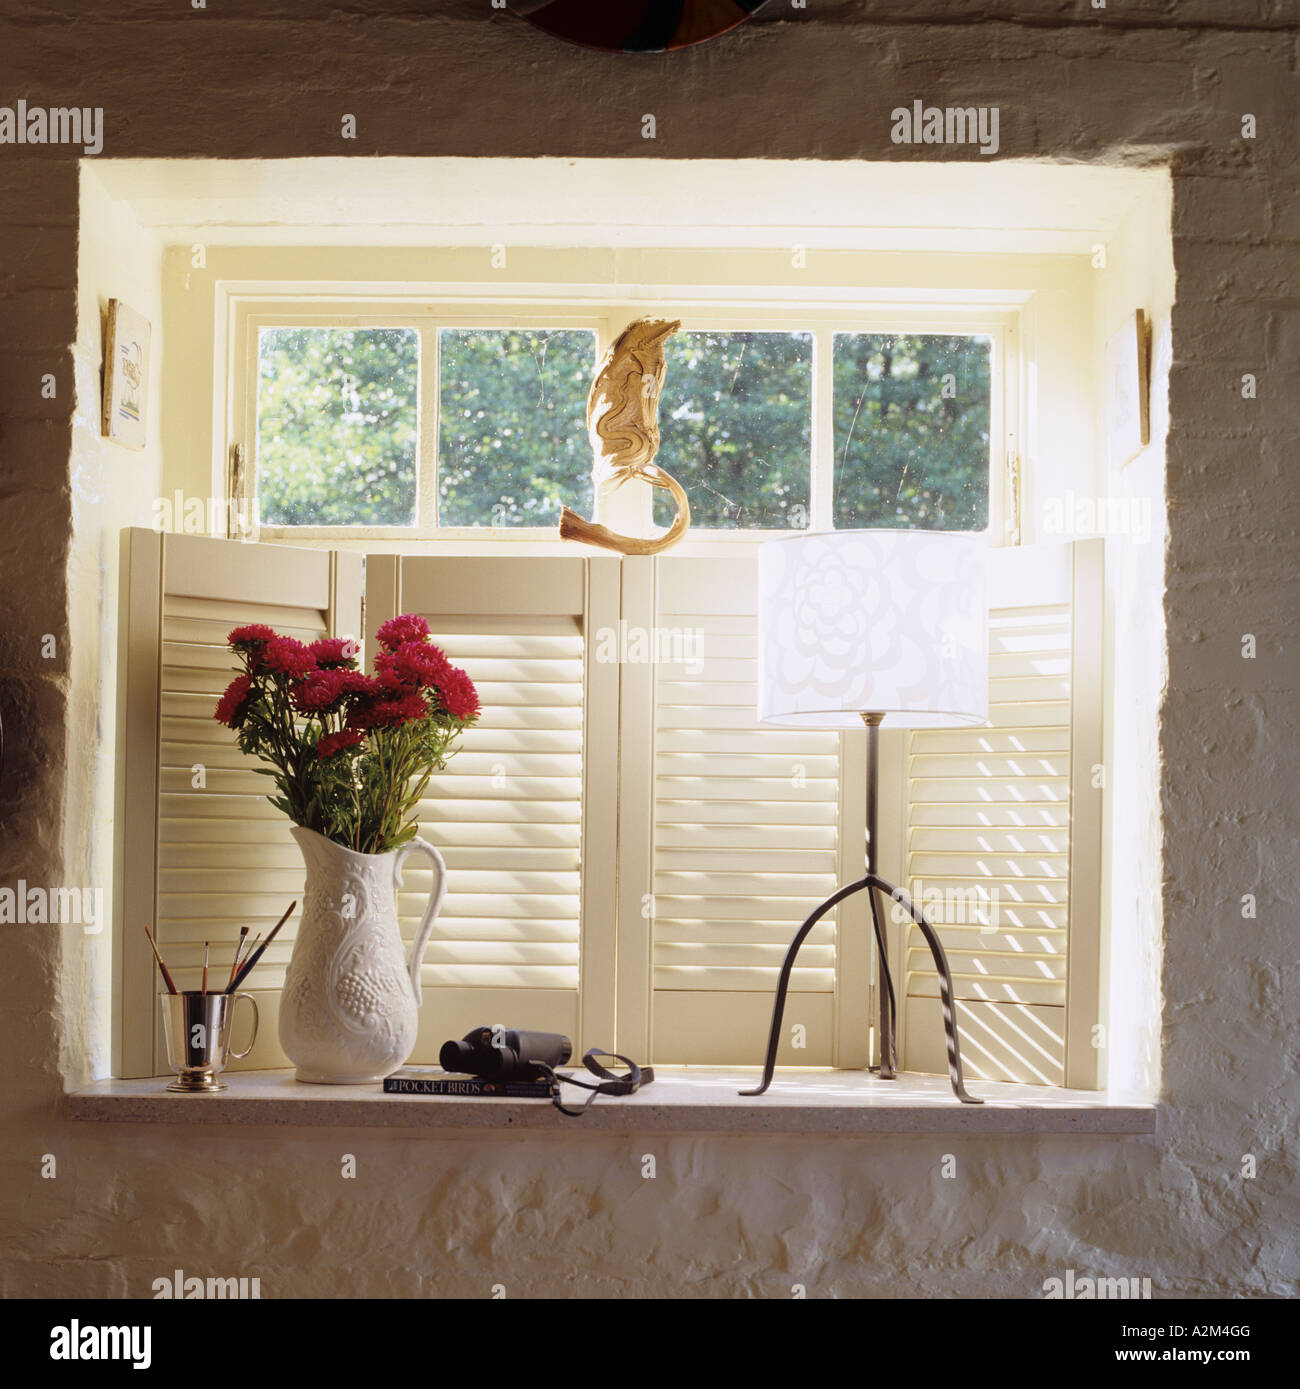 Brocca di fiori sul davanzale di una finestra con persiane bianche Foto Stock